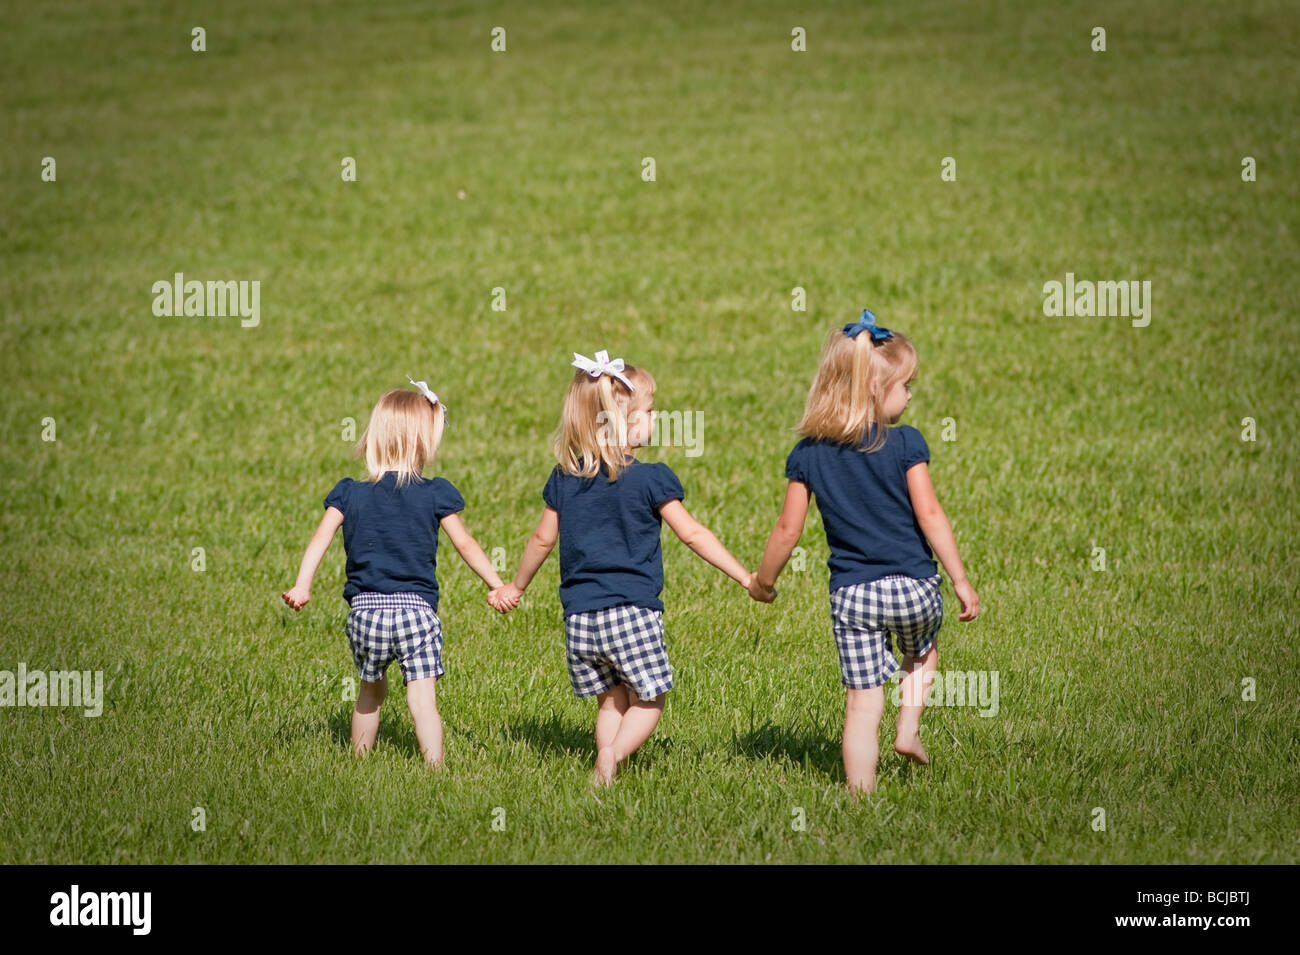 Trois petites filles, sœurs, tenant les mains de marcher ensemble dans les champs tout habillé. Deux des filles sont des jumeaux Banque D'Images